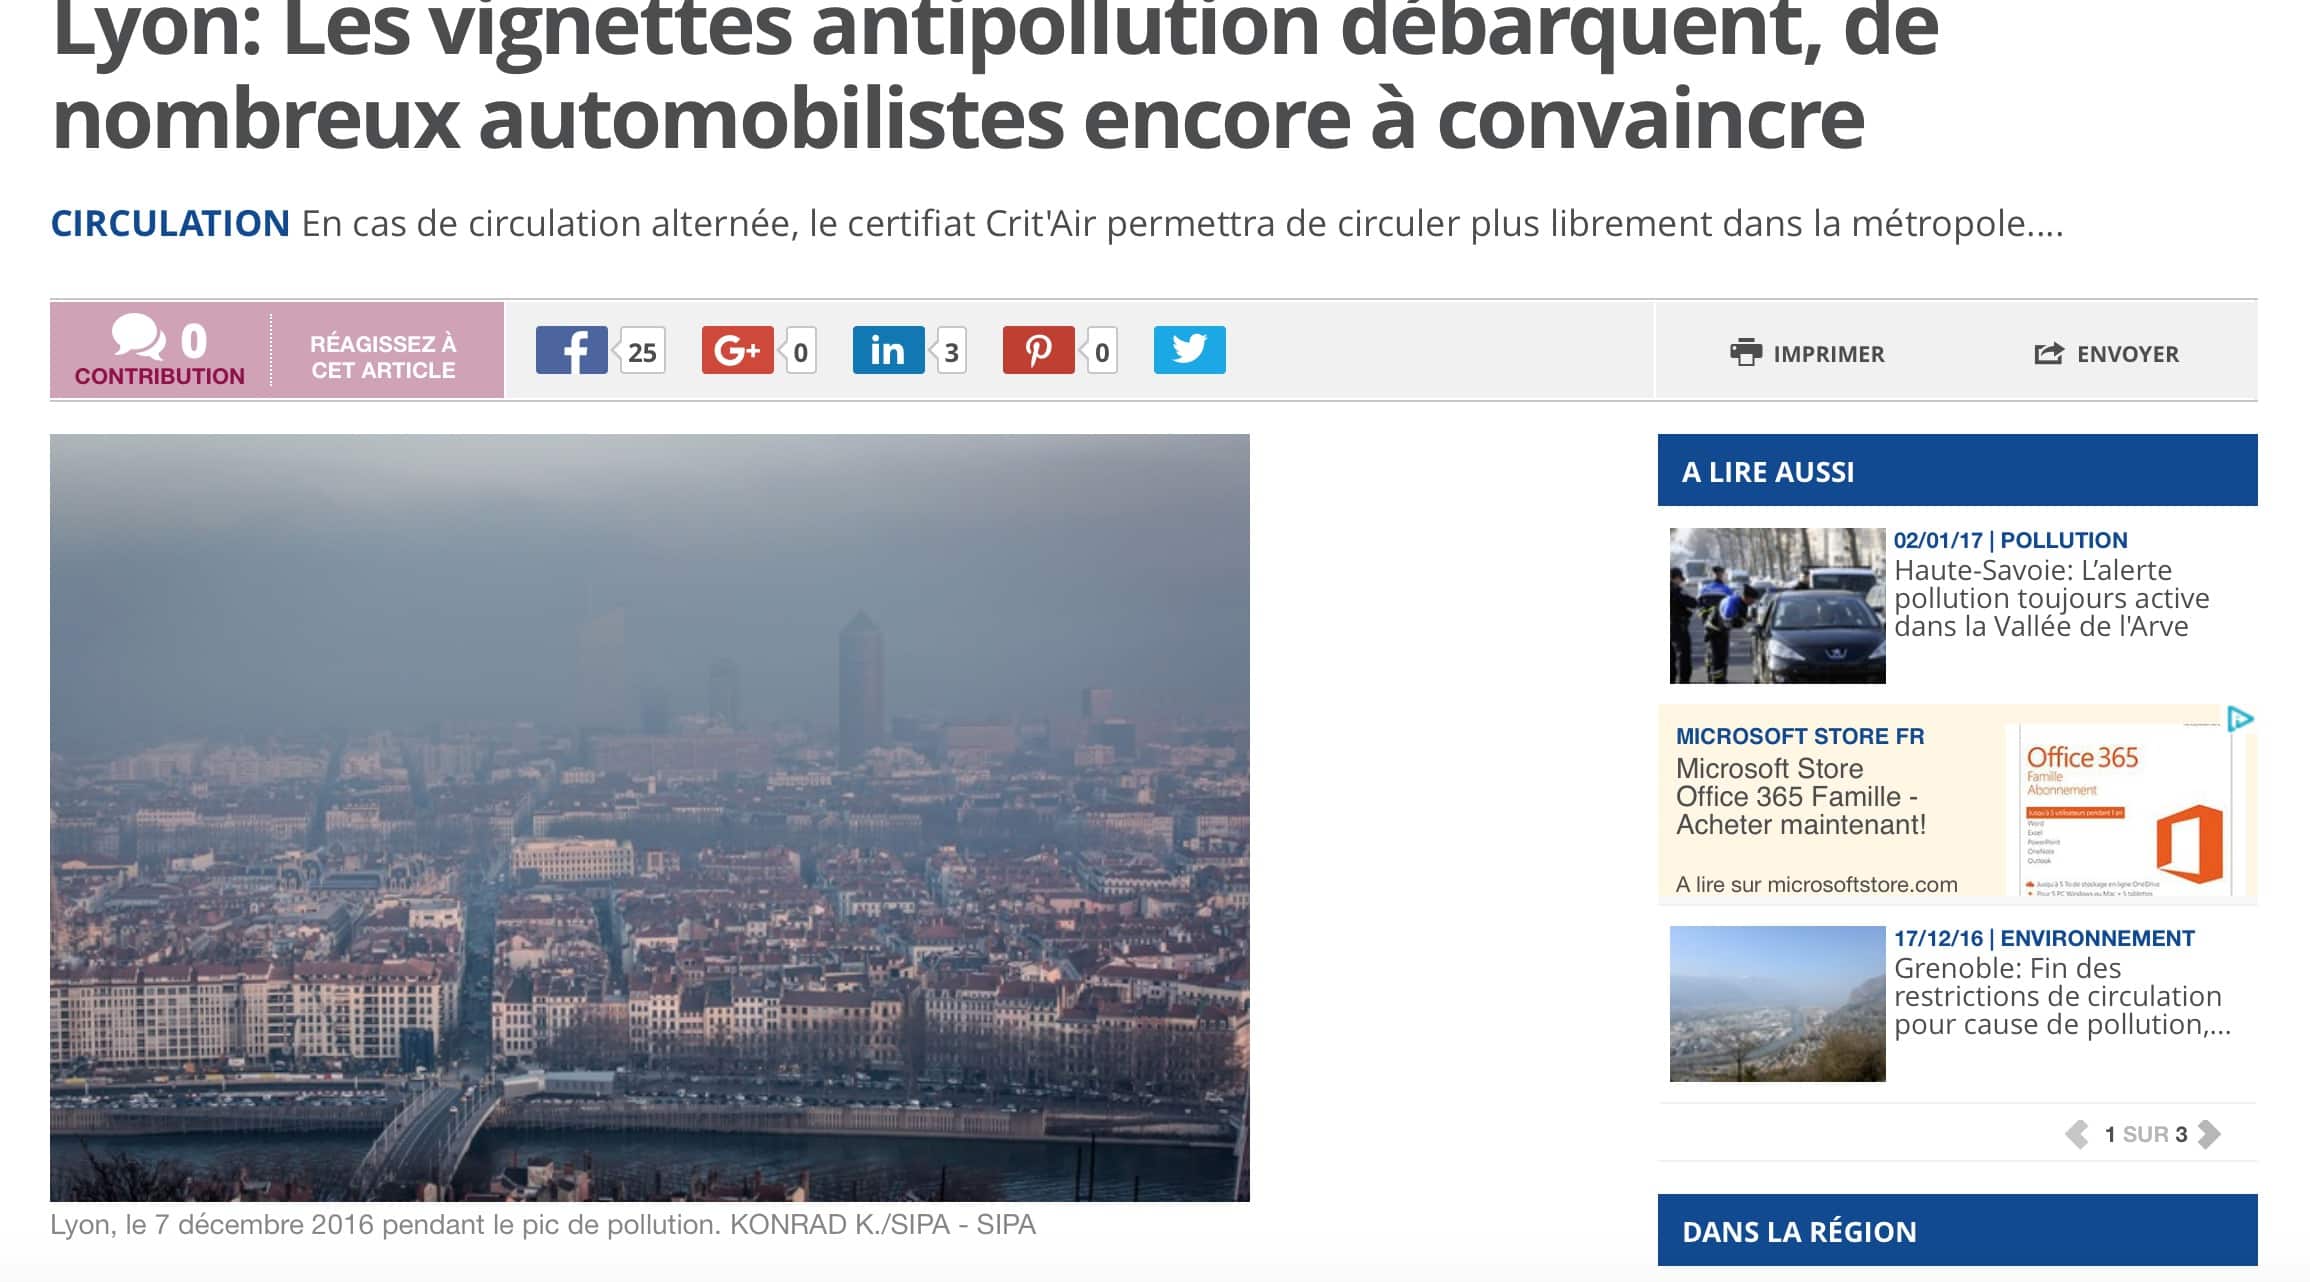 Arrivée des vignettes antipollution : les Lyonnais les adopteront-ils ?